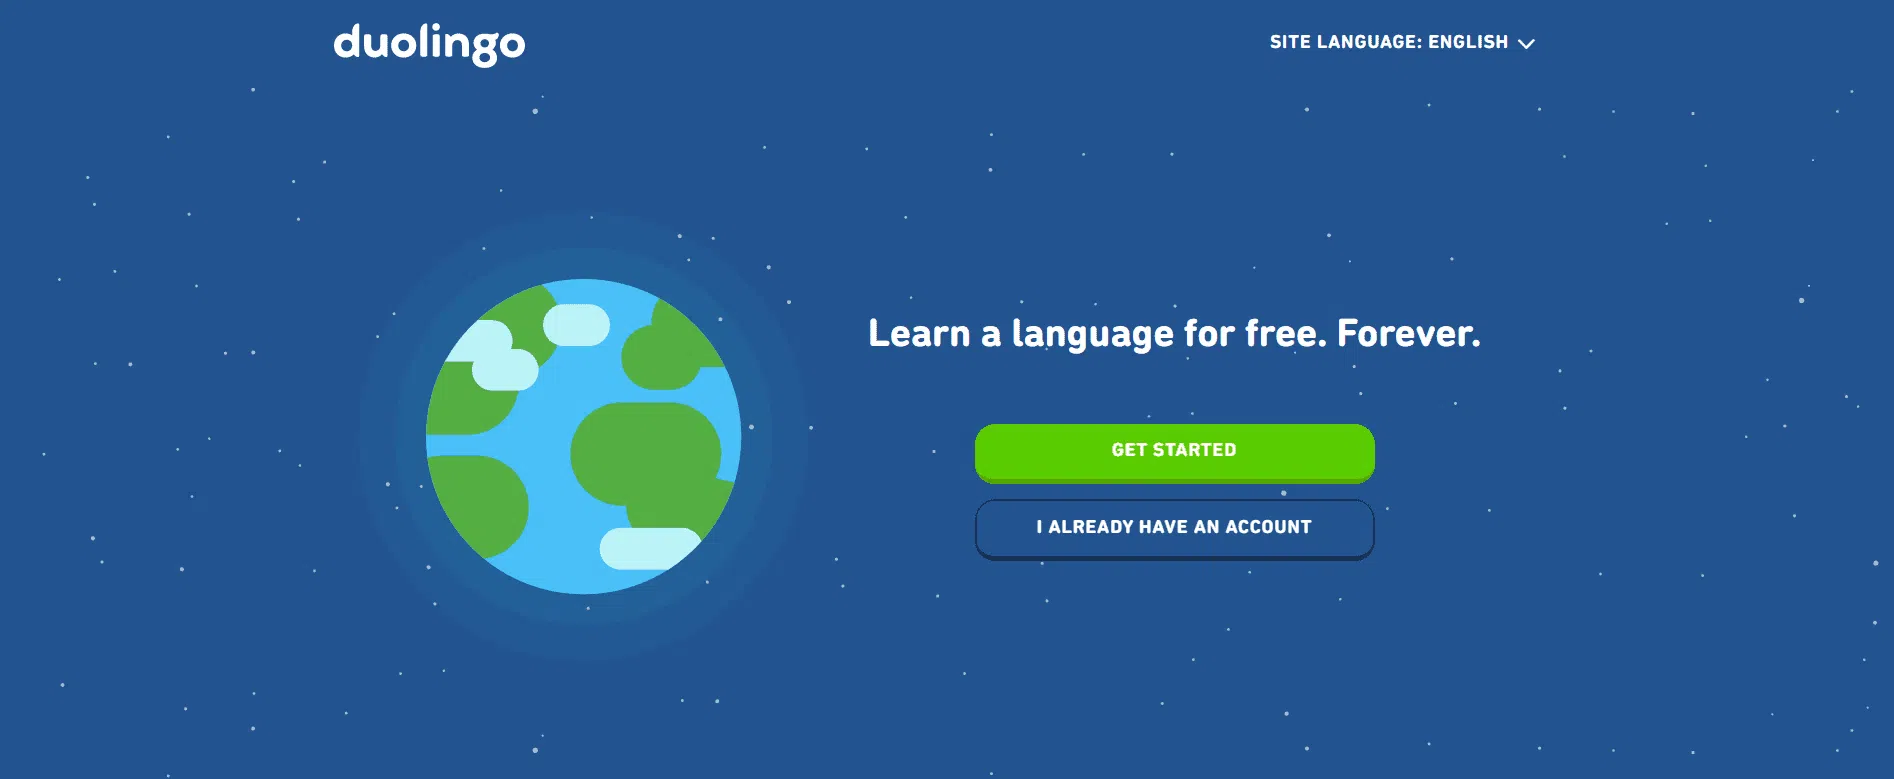 Duolingo Pricing Duolingo-Overview